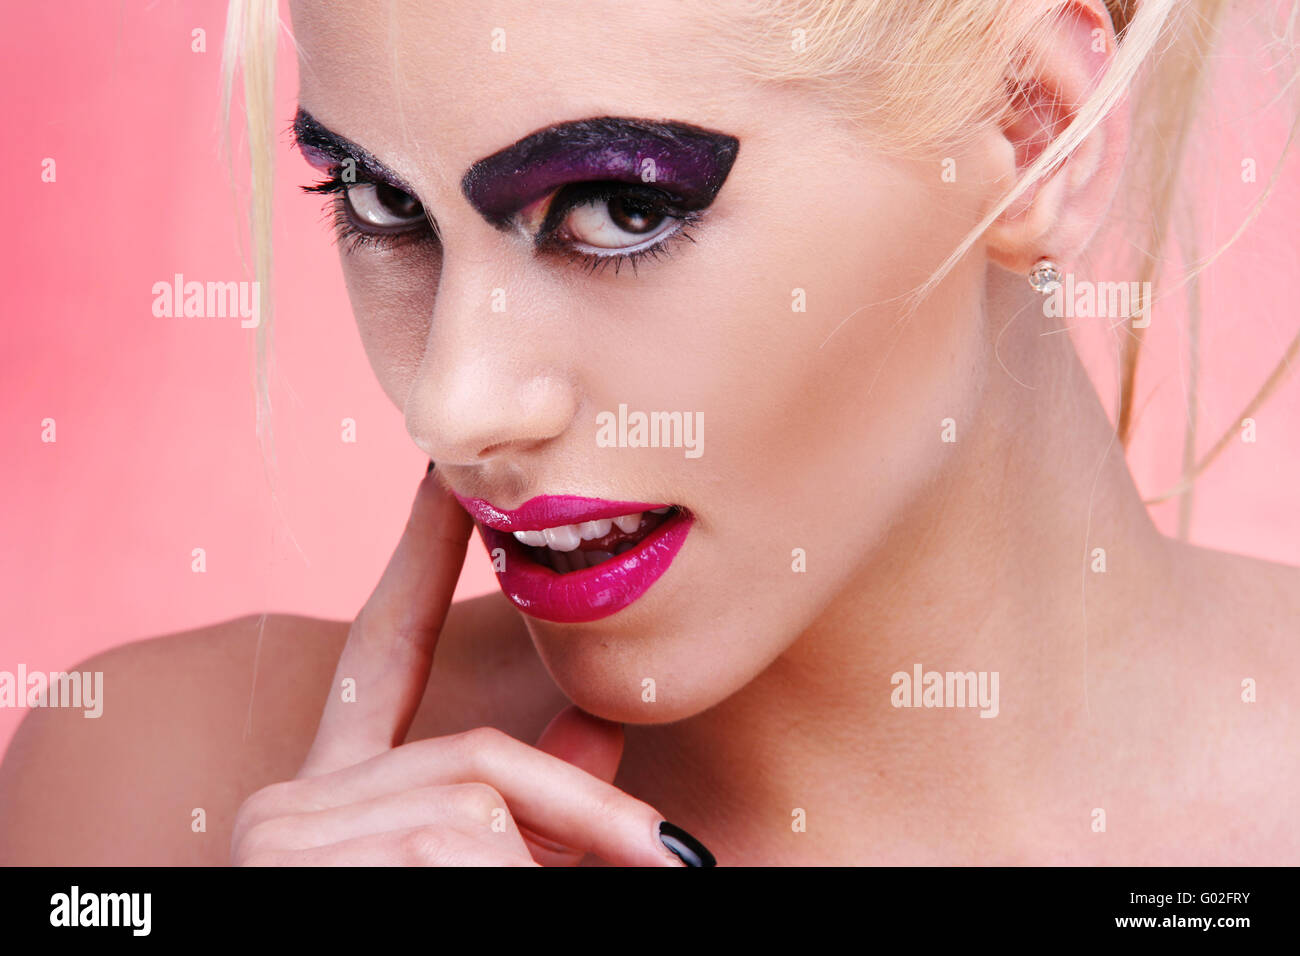 Giovane donna in rosa ritratto. viola per il make-up e Grosse labbra biondi capelli funky style Foto Stock